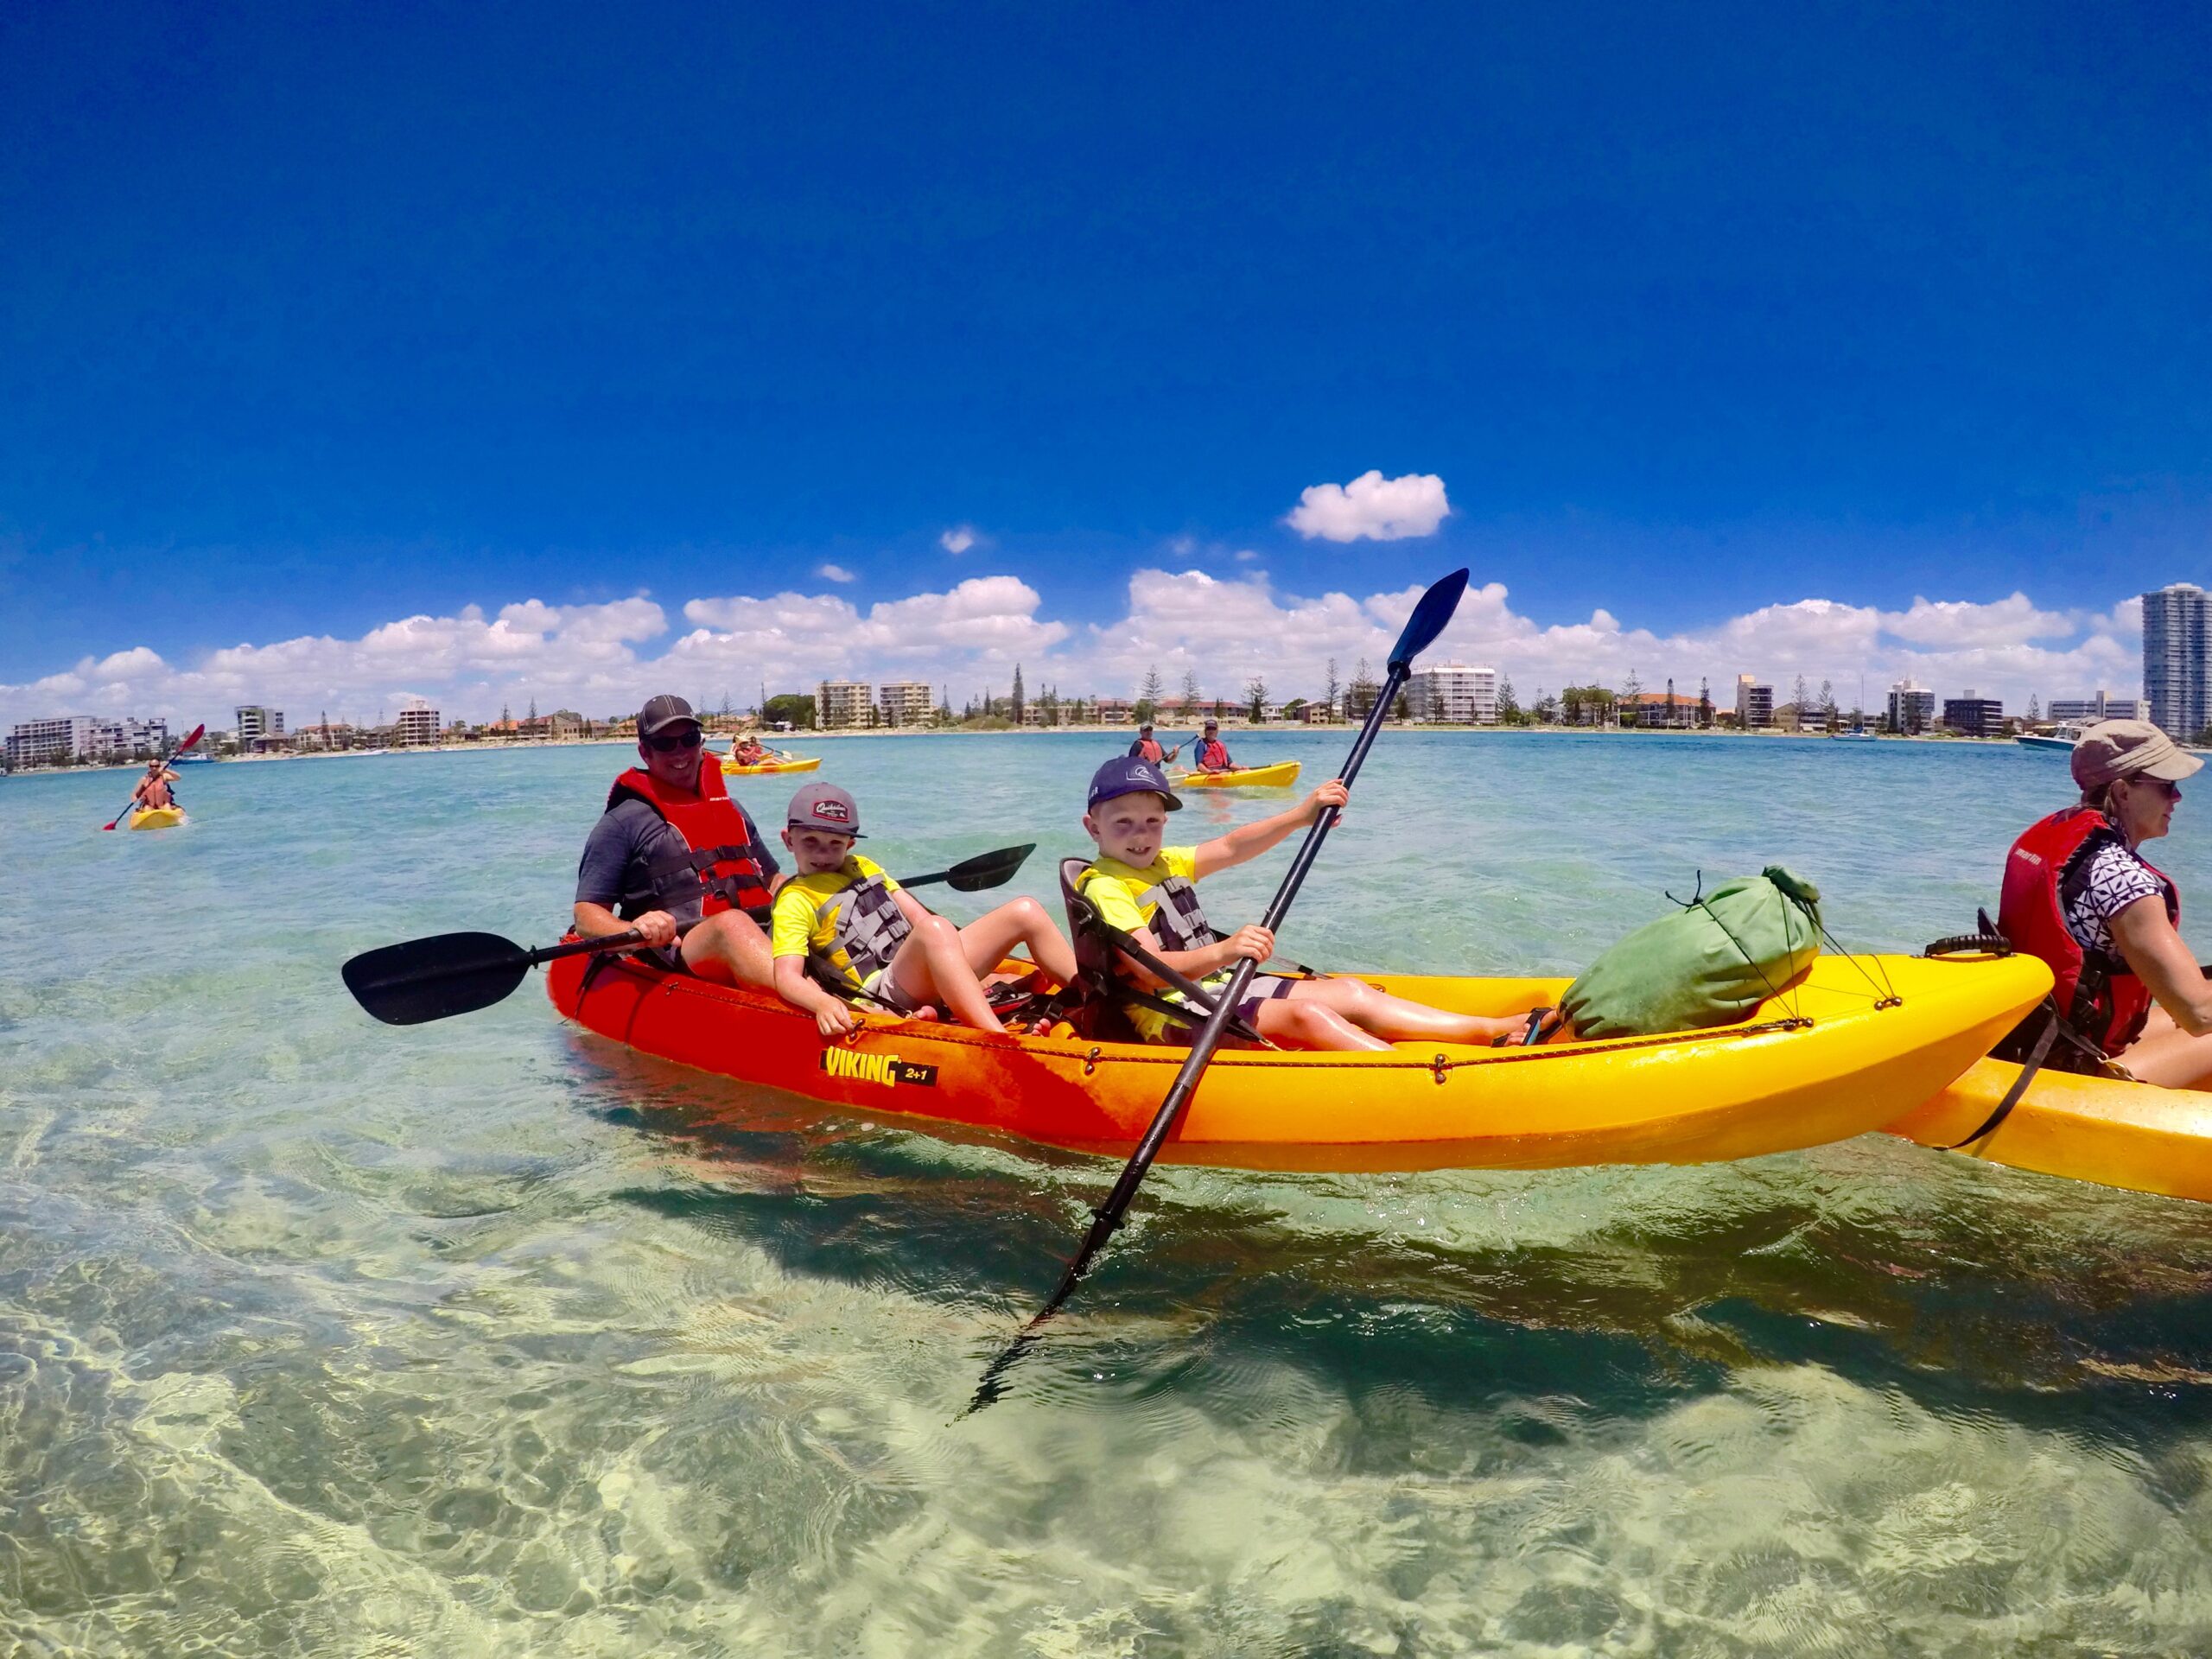 Gold coast Kayaking & Snorkelling tour